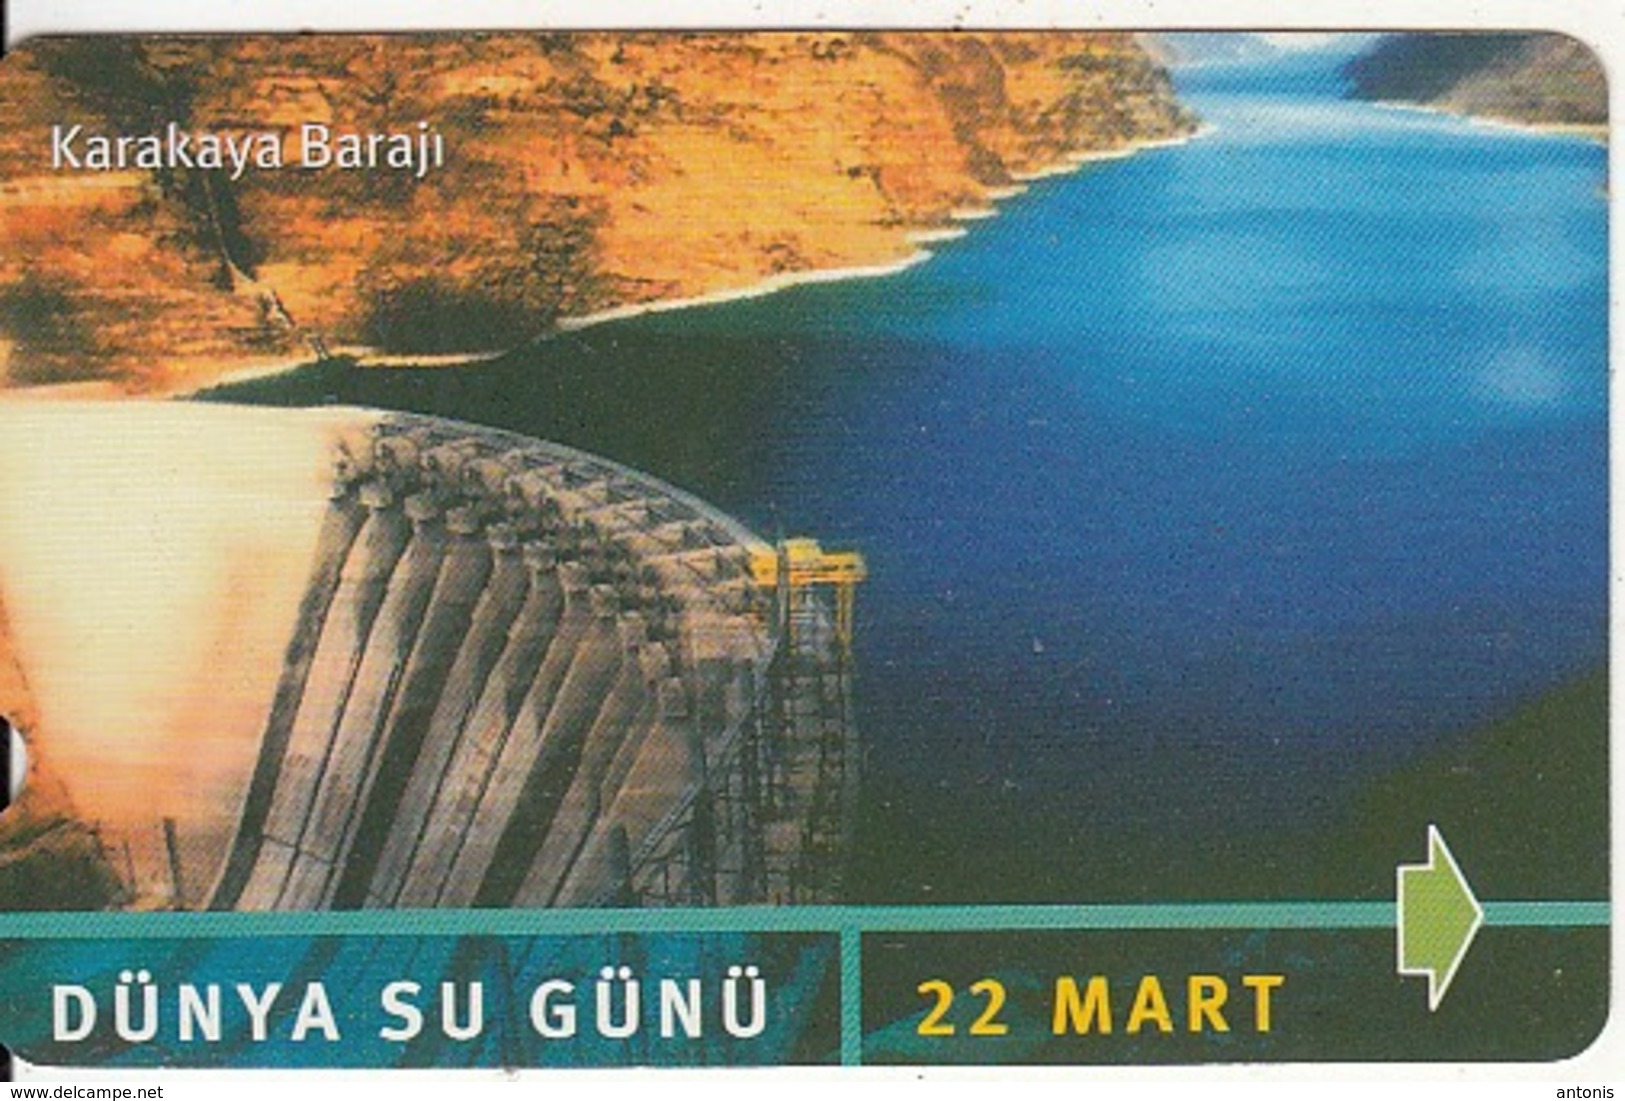 TURKEY - Dunya Su Gunu, Karakaya Baraji(30 Units), 03/02, Used - Turquie